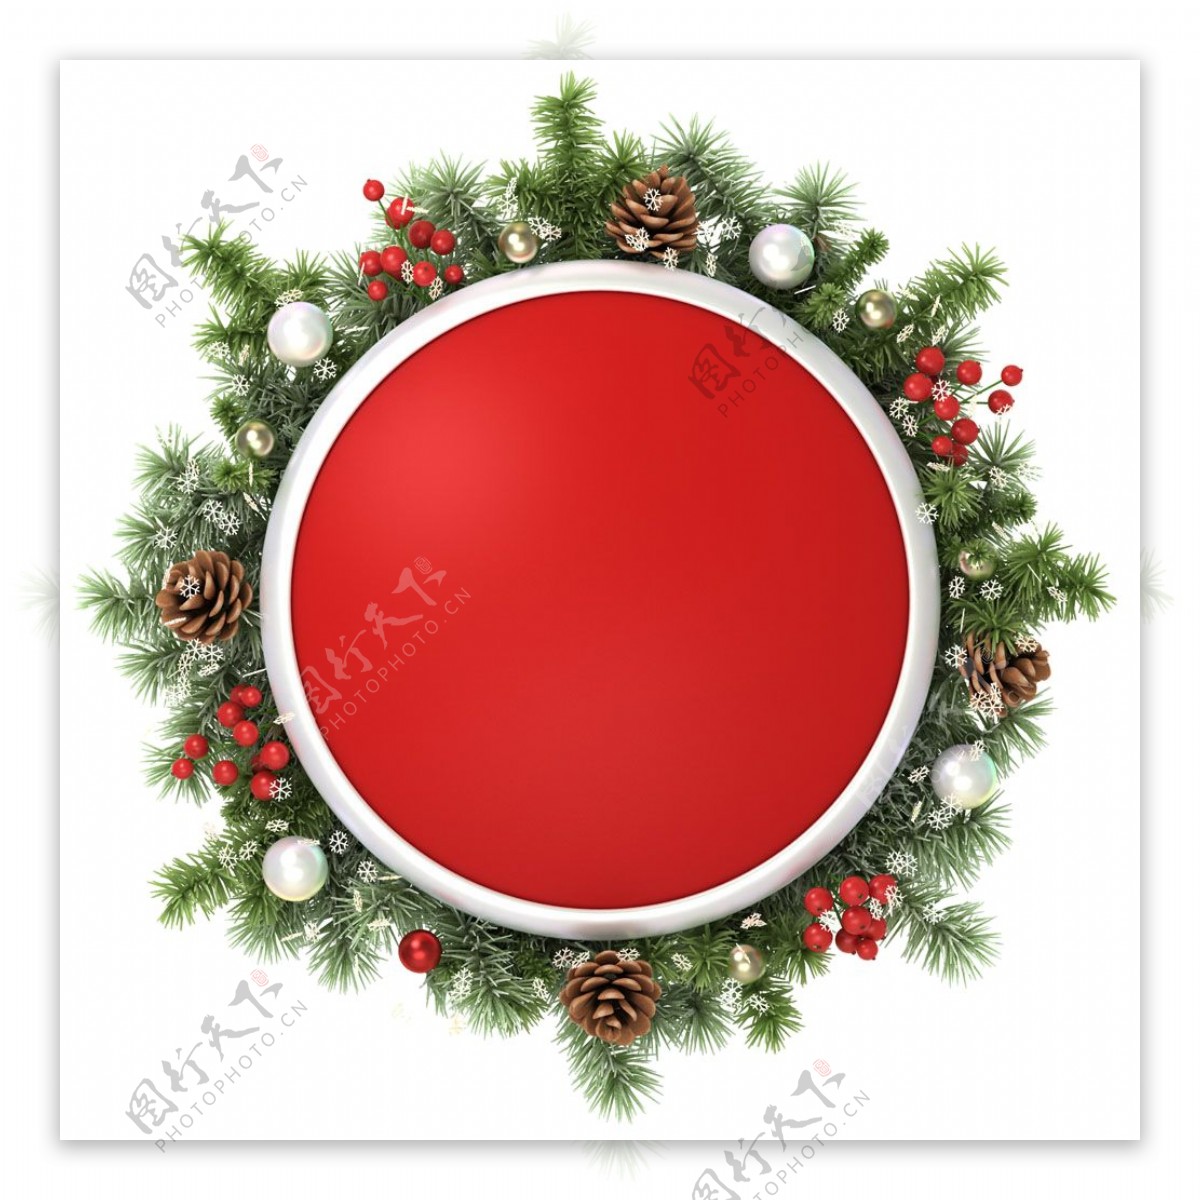 红色圣诞松枝圆环元素